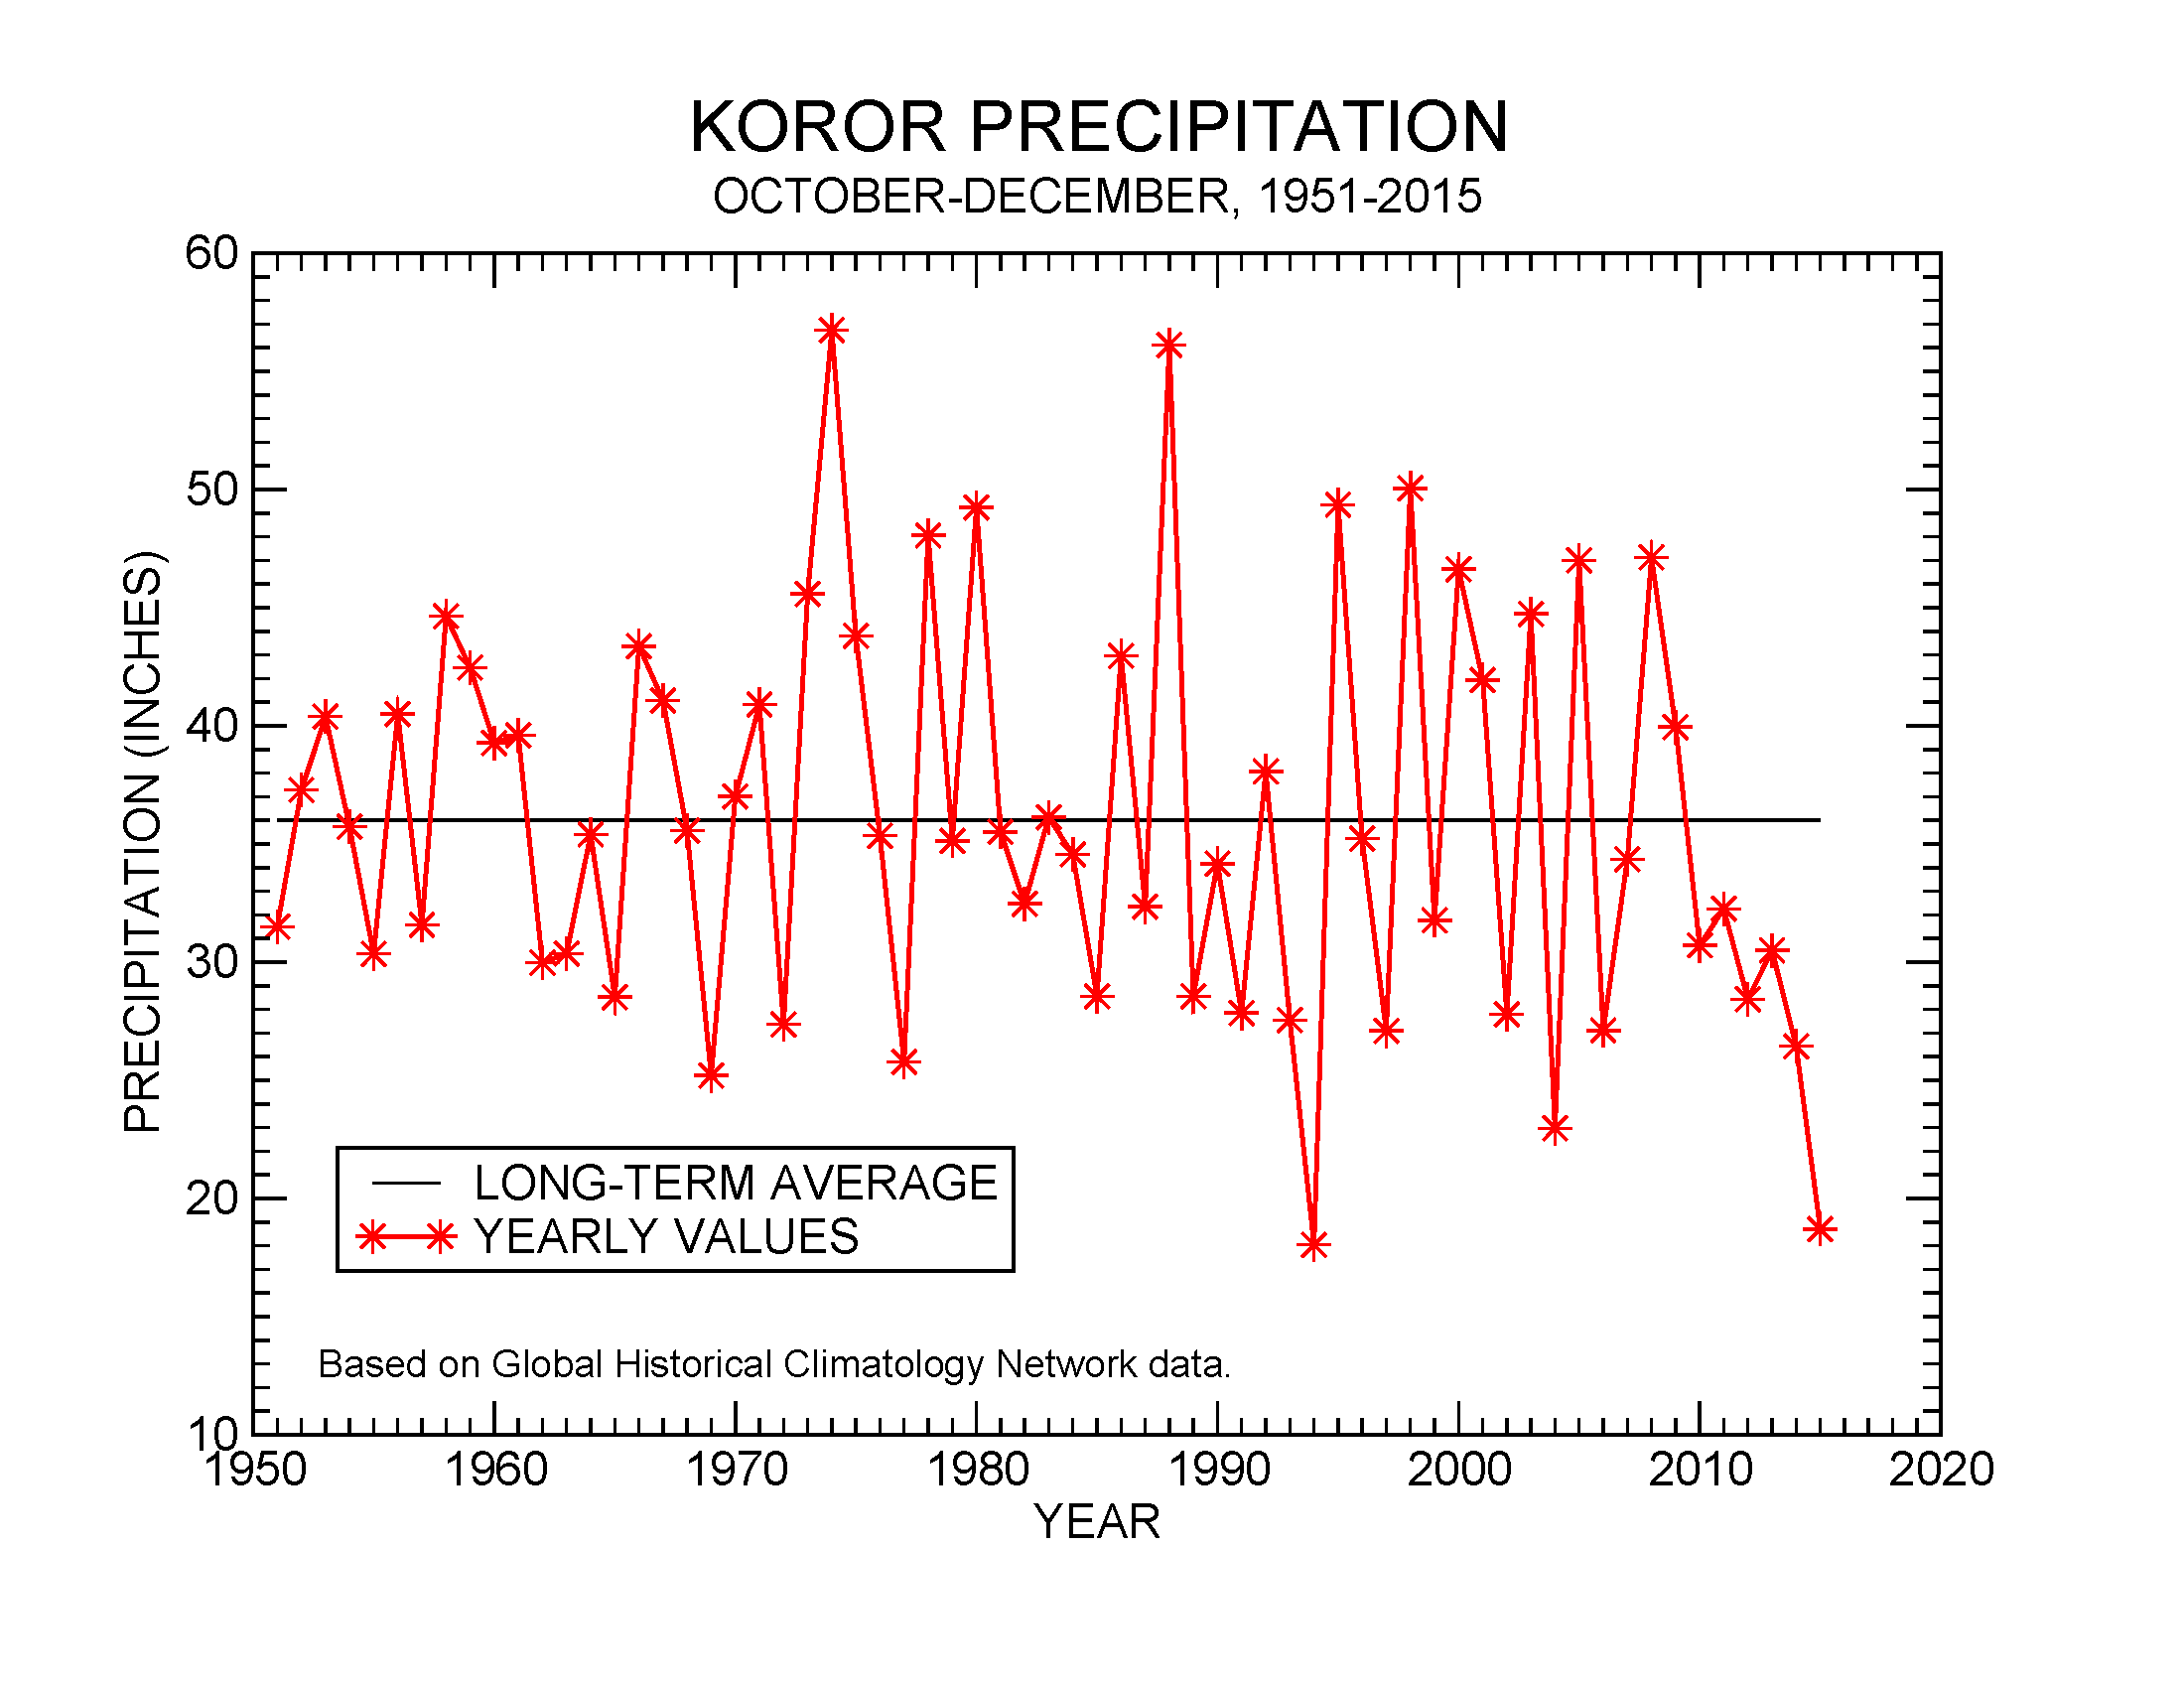 Precipitation at Koror, October-December, 1951-2015